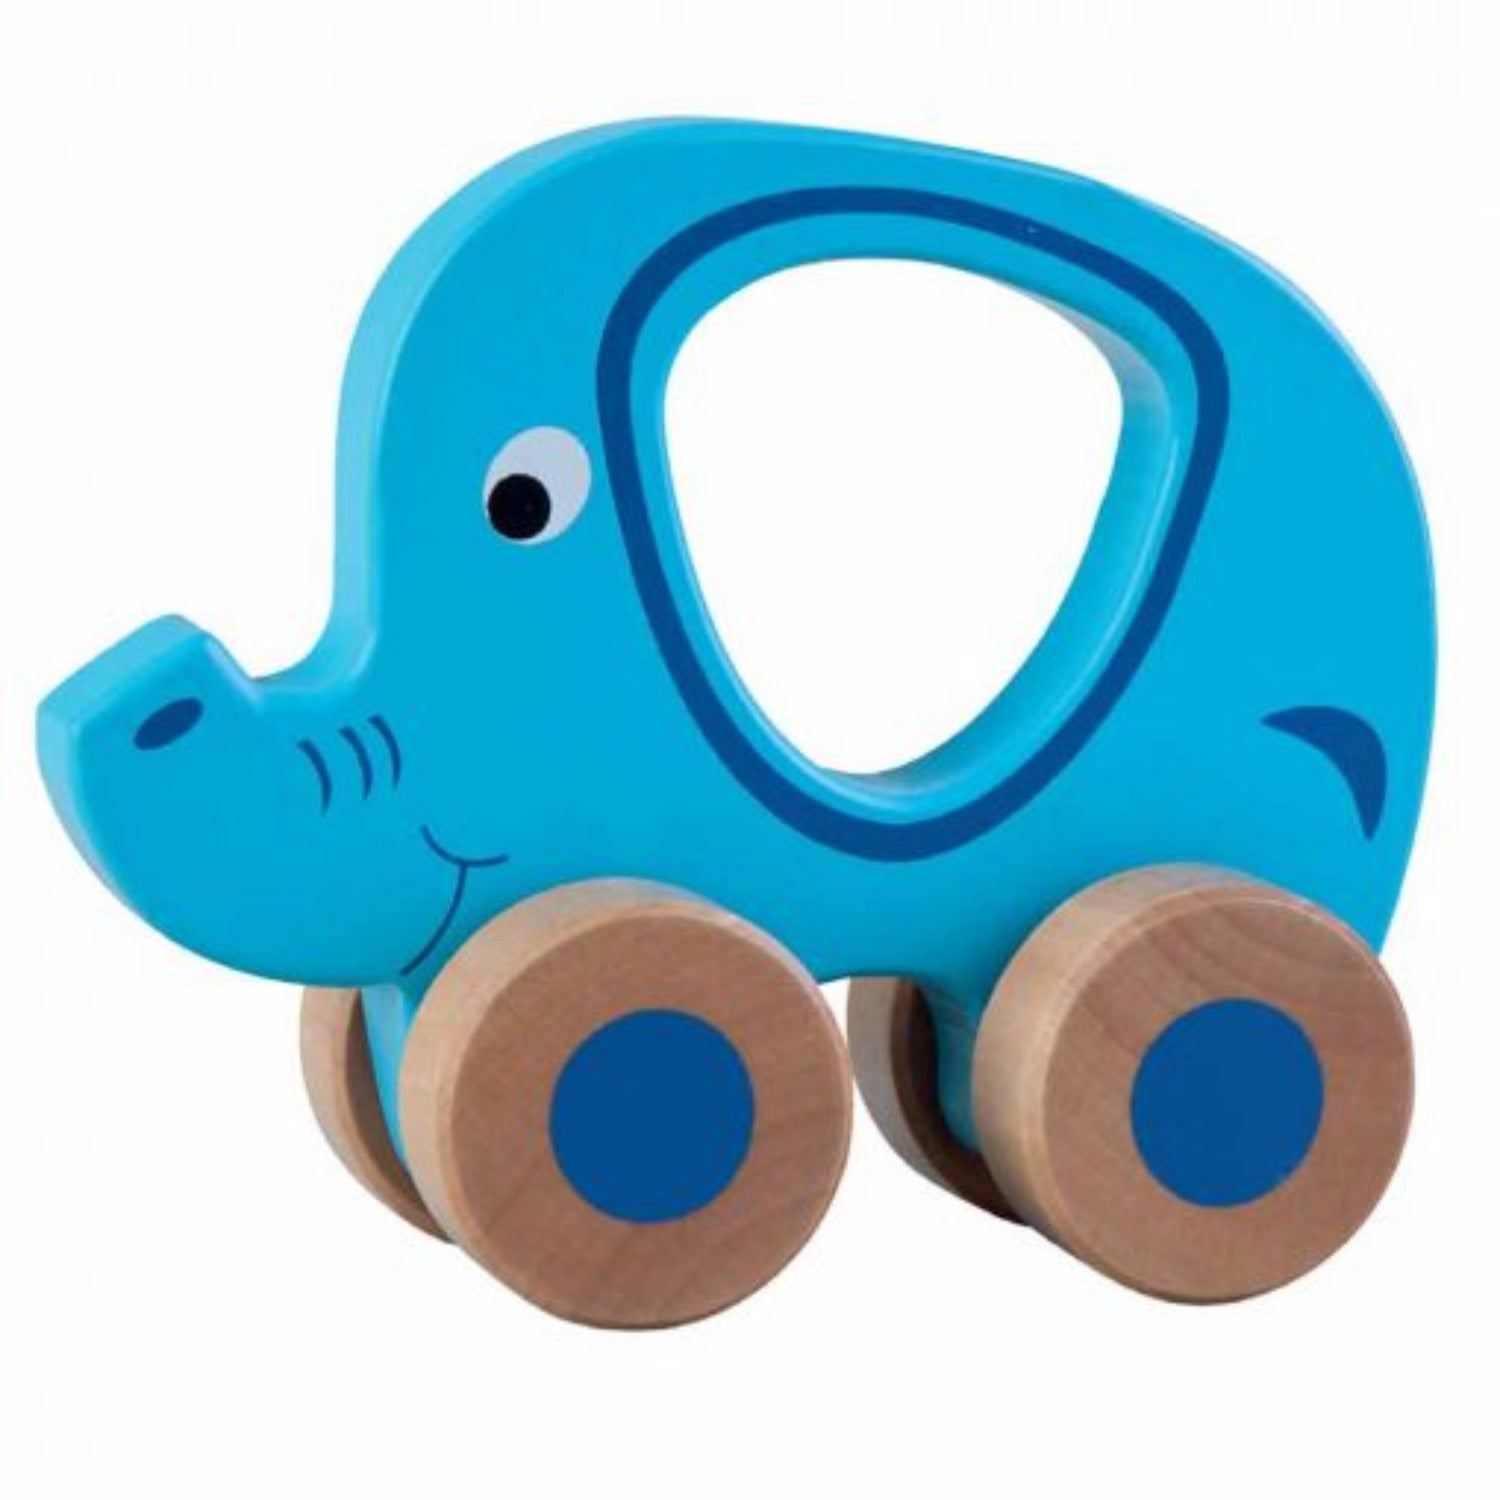 Elephant Push Along Toy